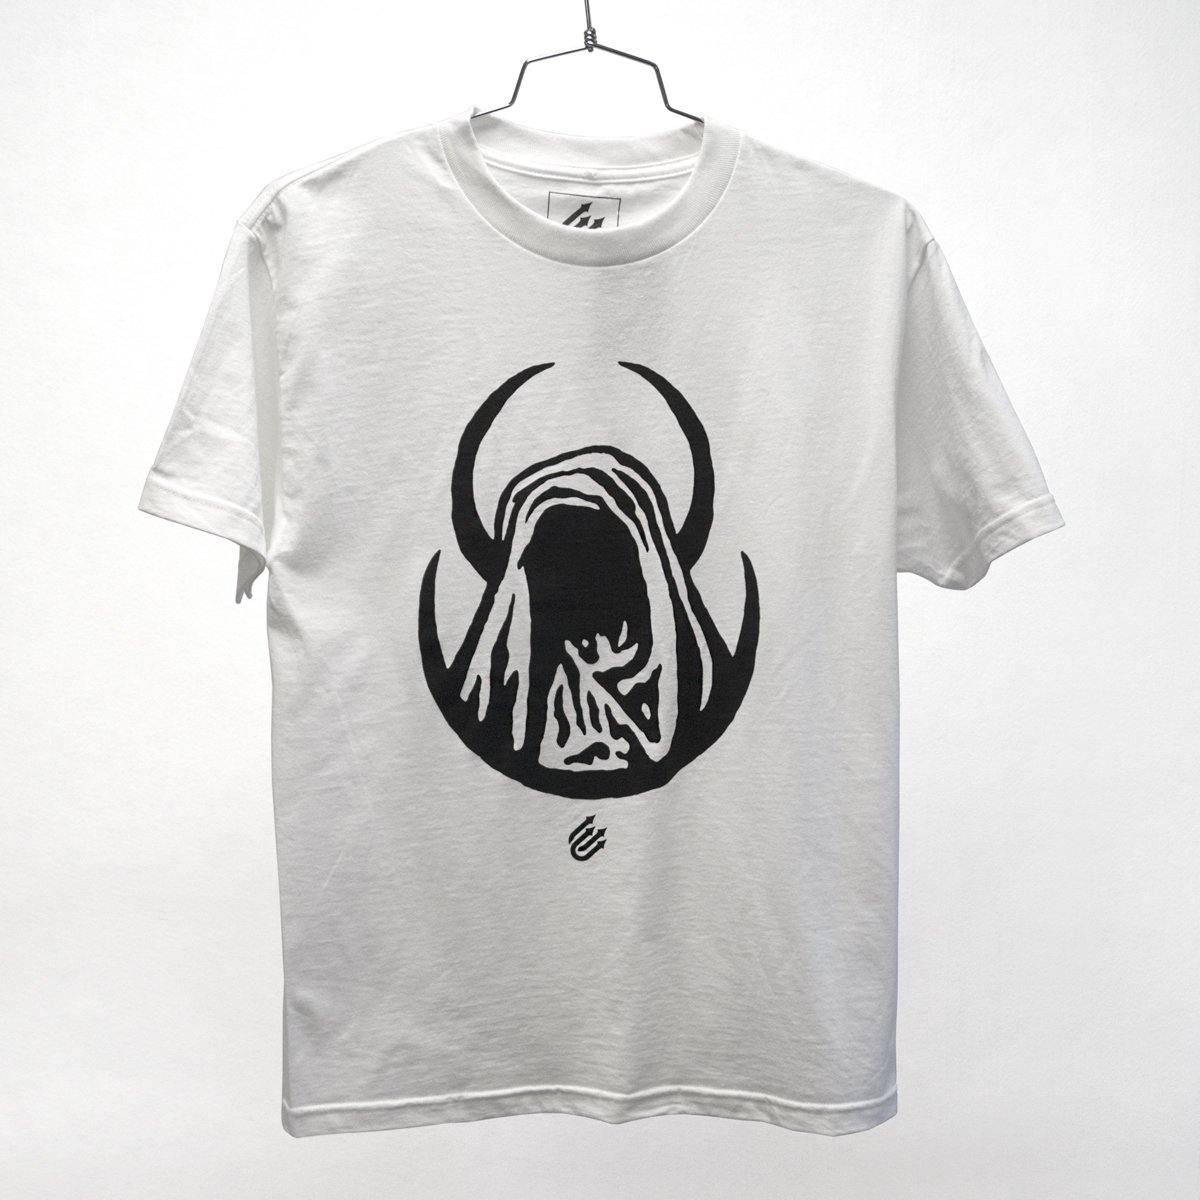 Buy – Moon Reaper Shirt – Cold Cuts Ltd